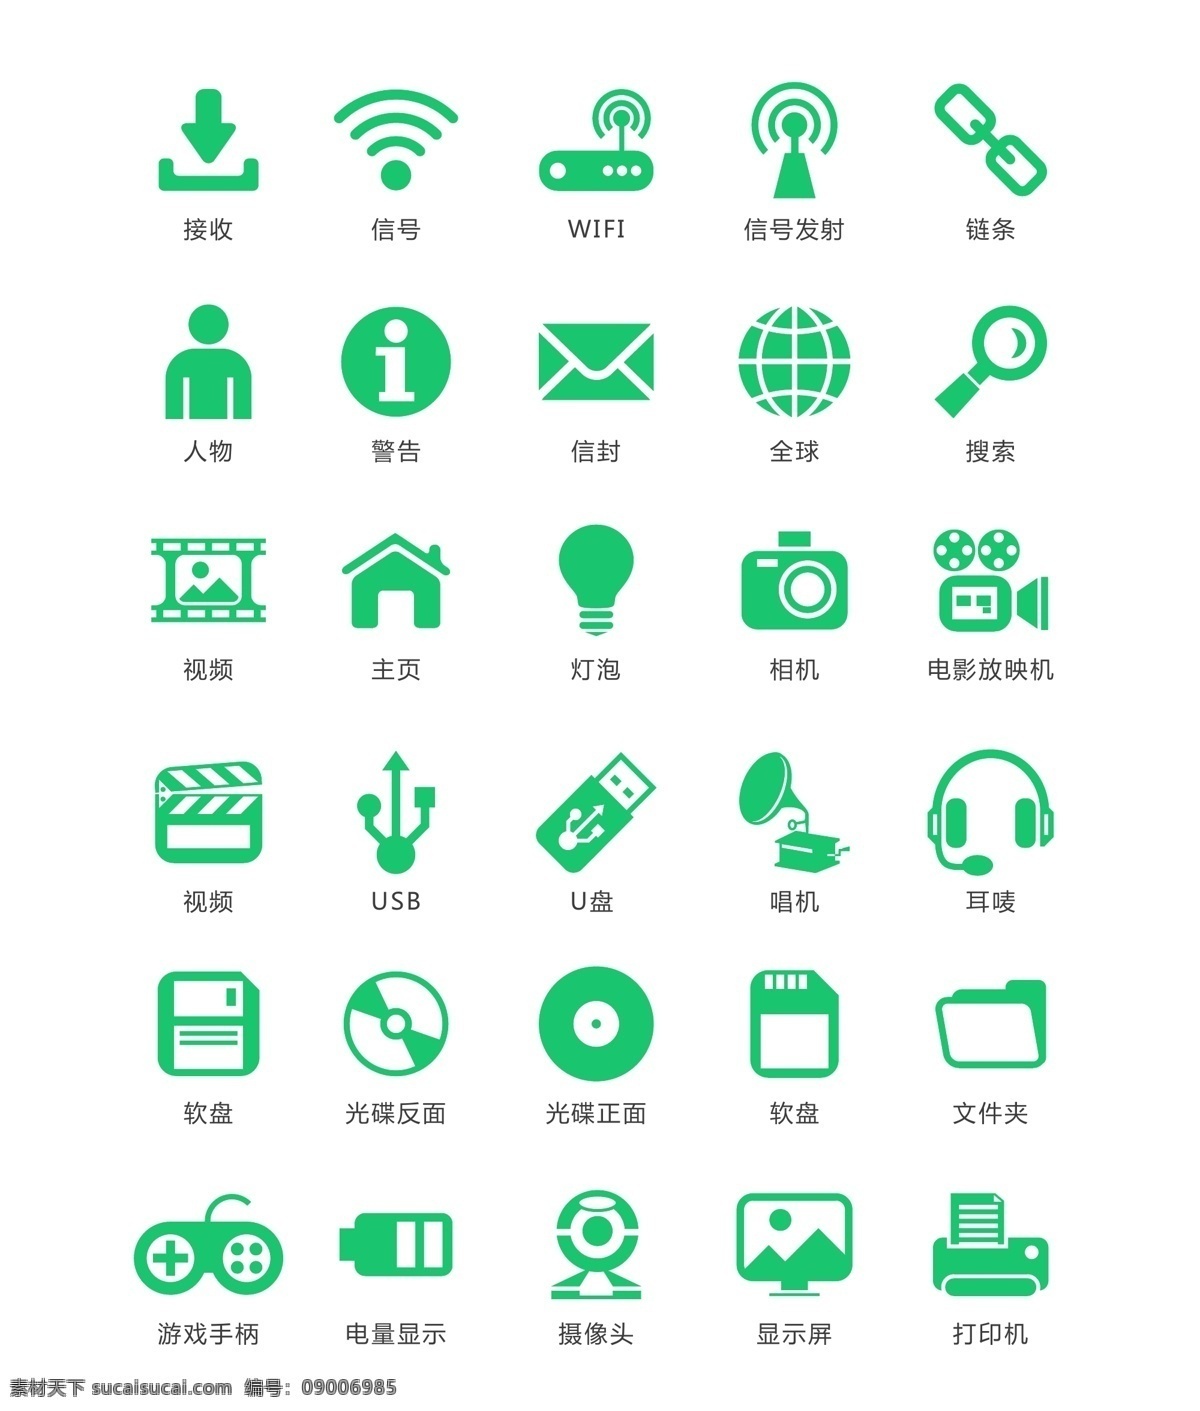 常规 绿色 手机 app 图标 元素 拍照 网页图标 手机图标 网络 绿色图标 相岫 图标元素 图标设计 图标下载 主题图标 定位 电子app 手机图标素材